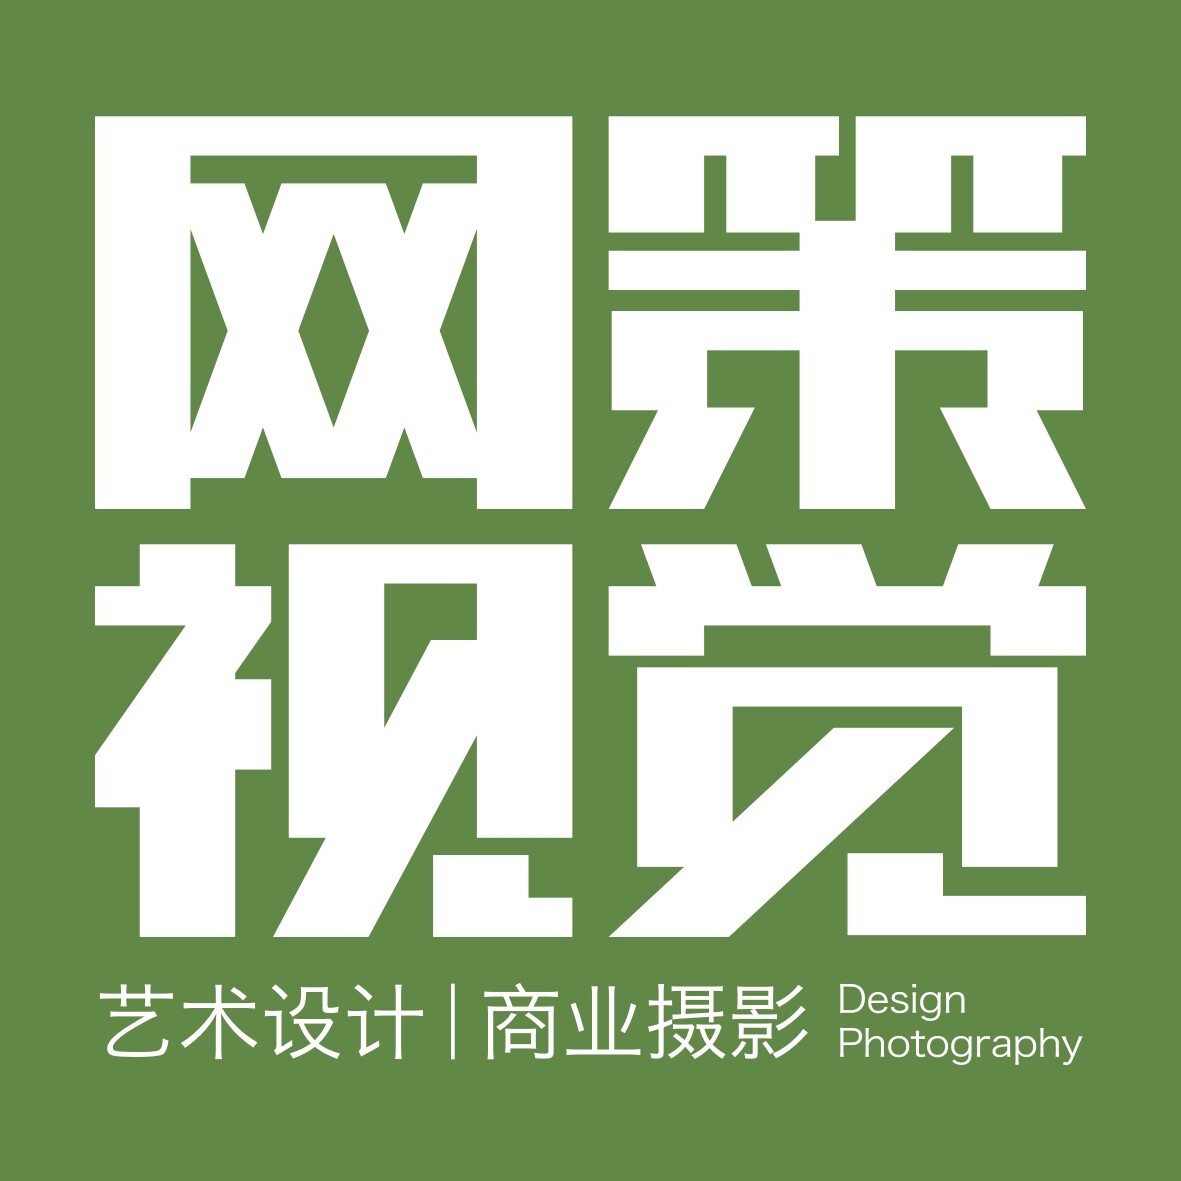 宁波海曙网策电子商务有限公司logo